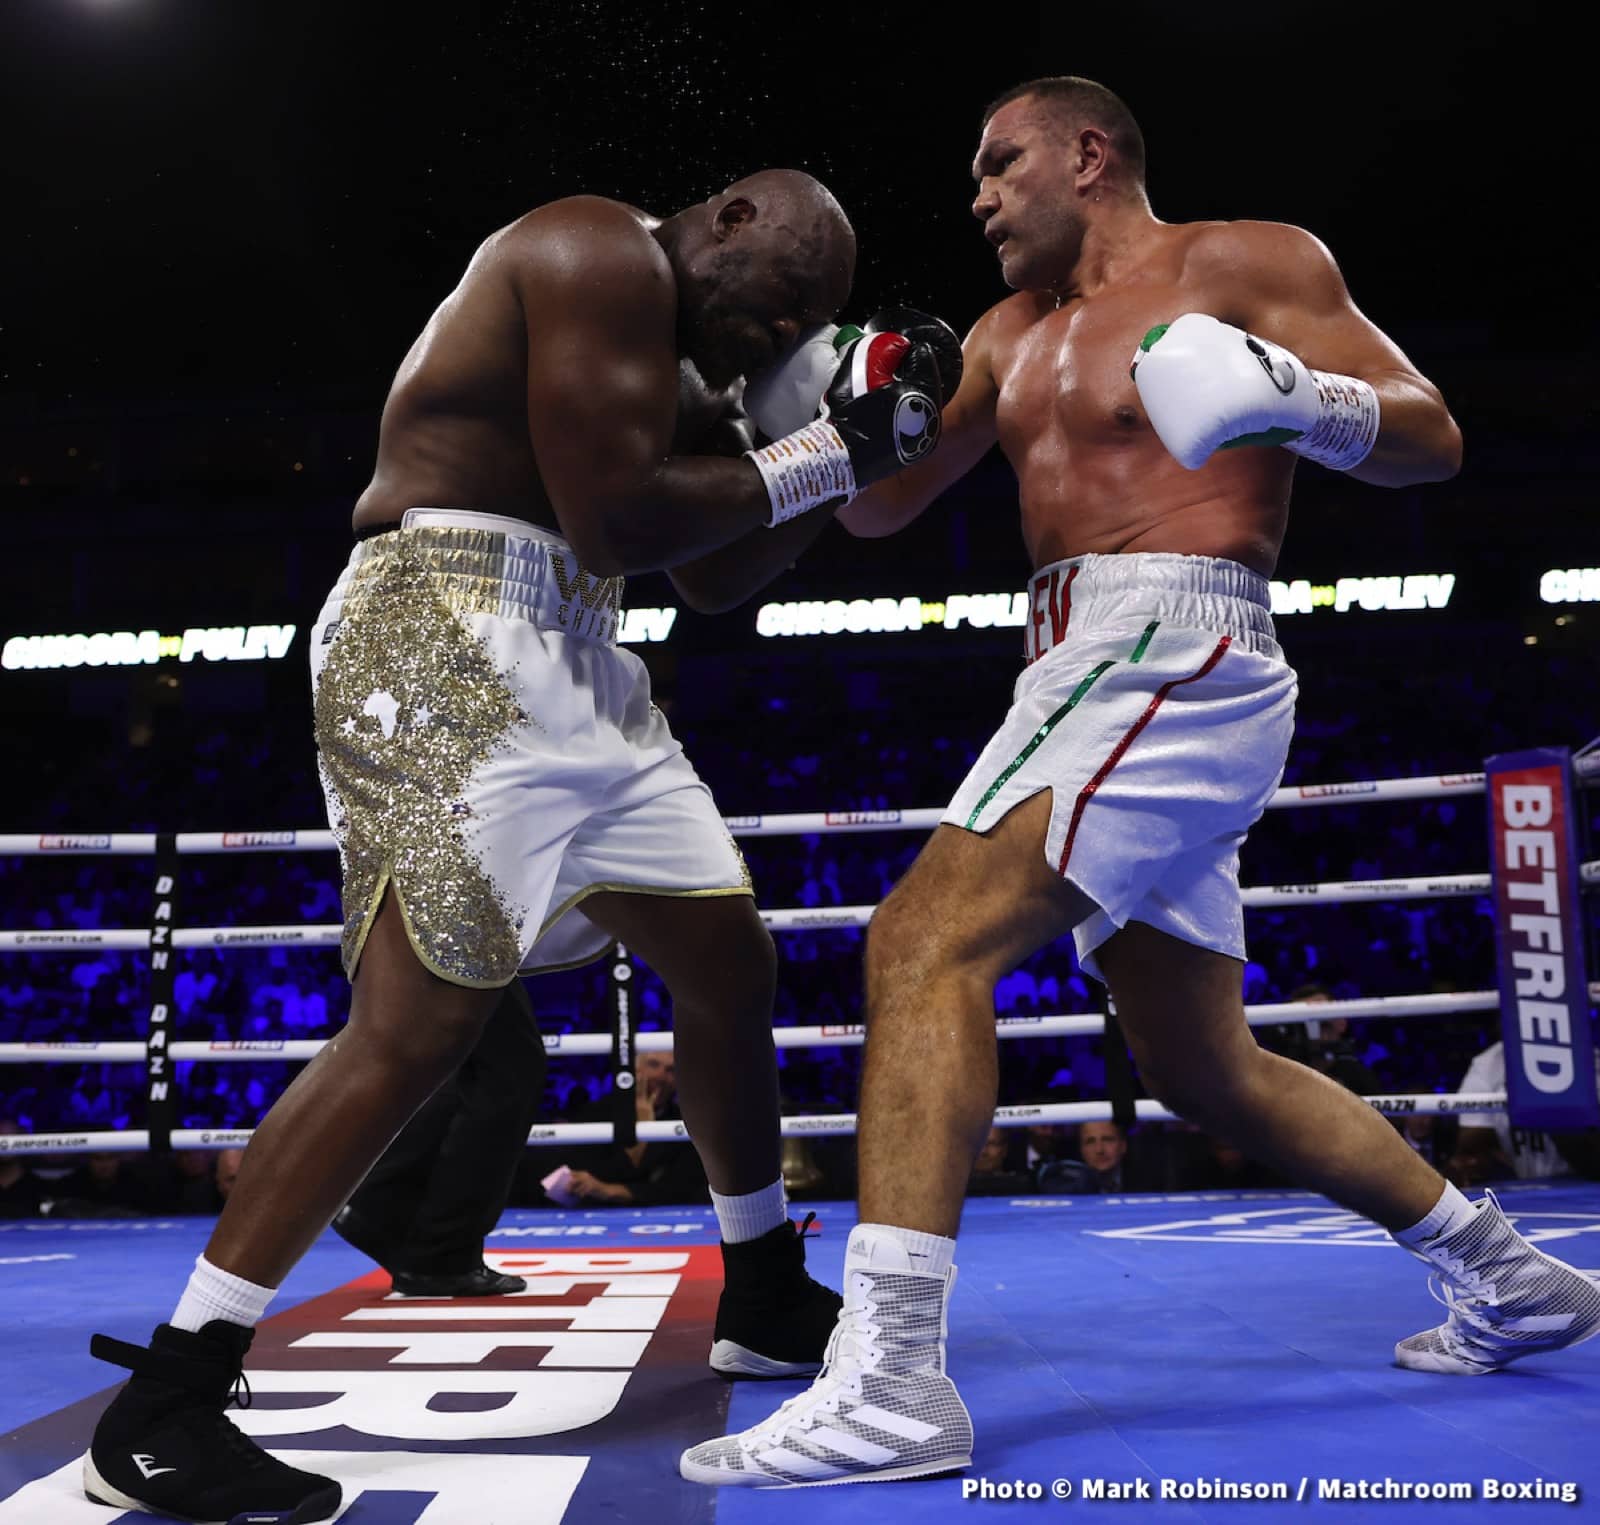 Derek Chisora boxing image / photo